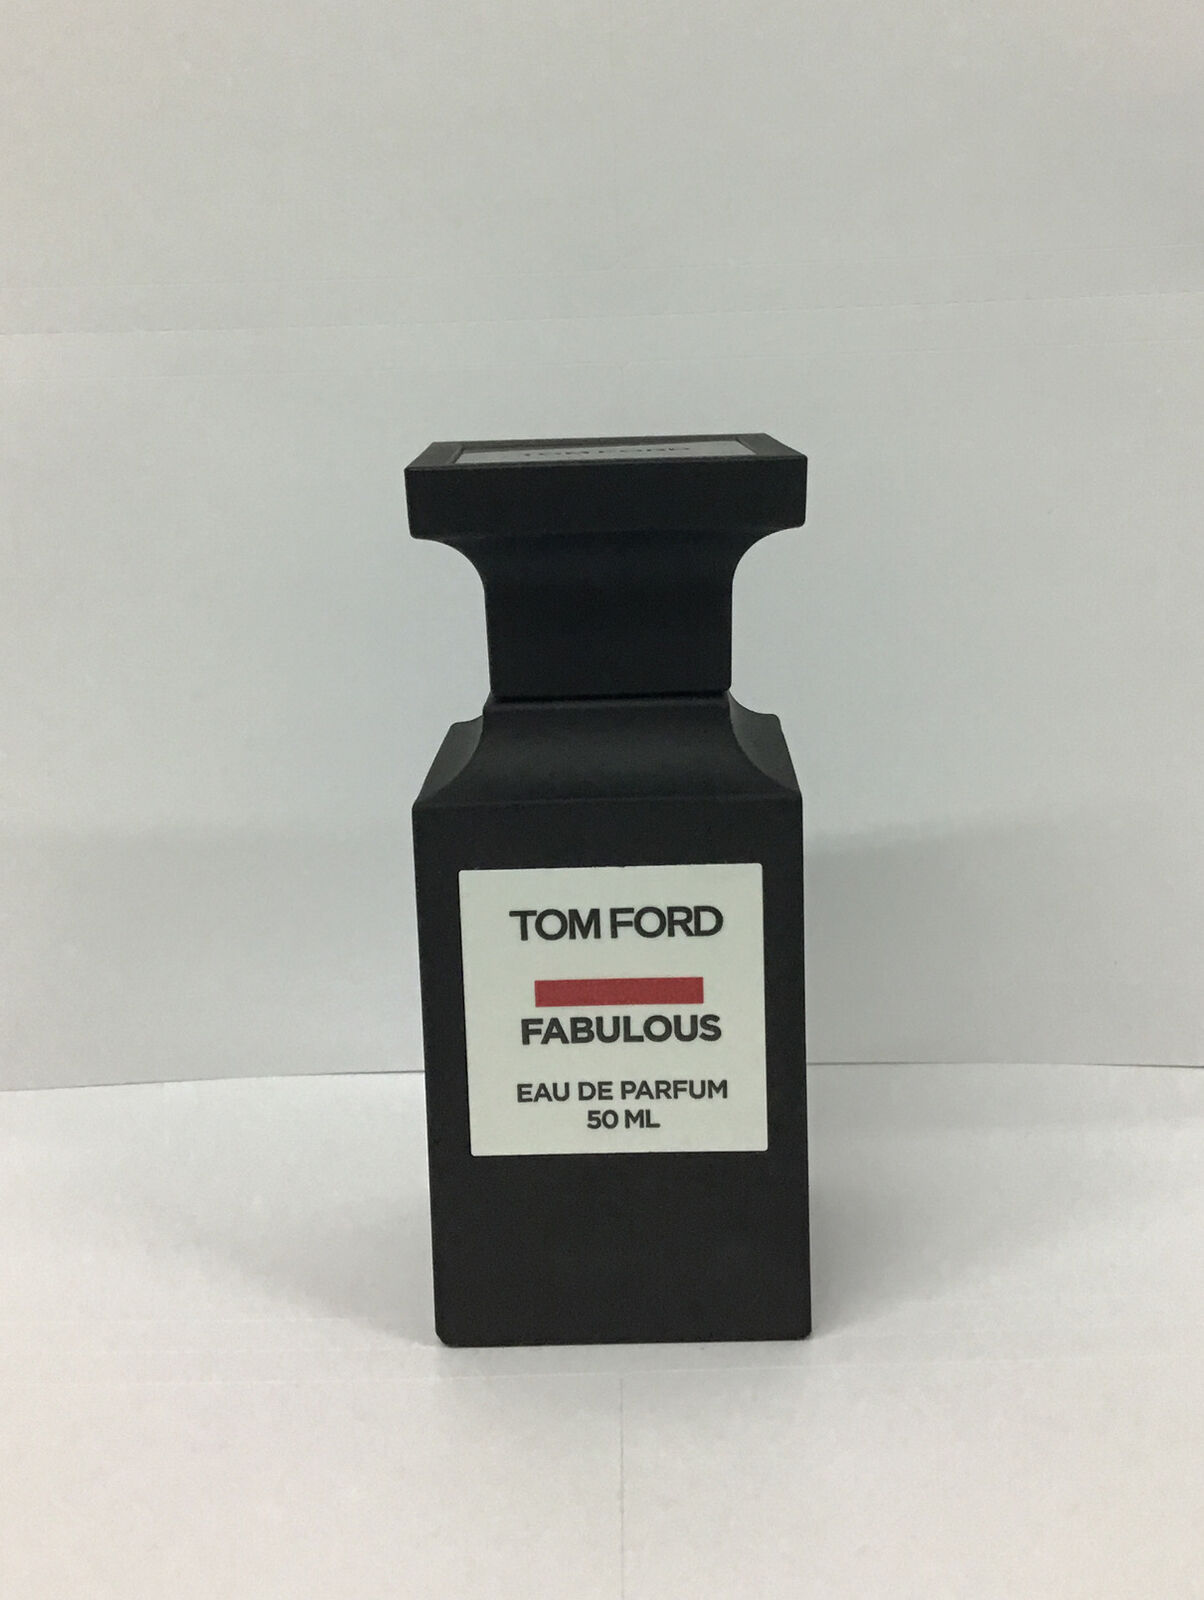 Tom Ford Fabulous Eau De Parfum Spray 1.7 Fl Oz, As Pictured.